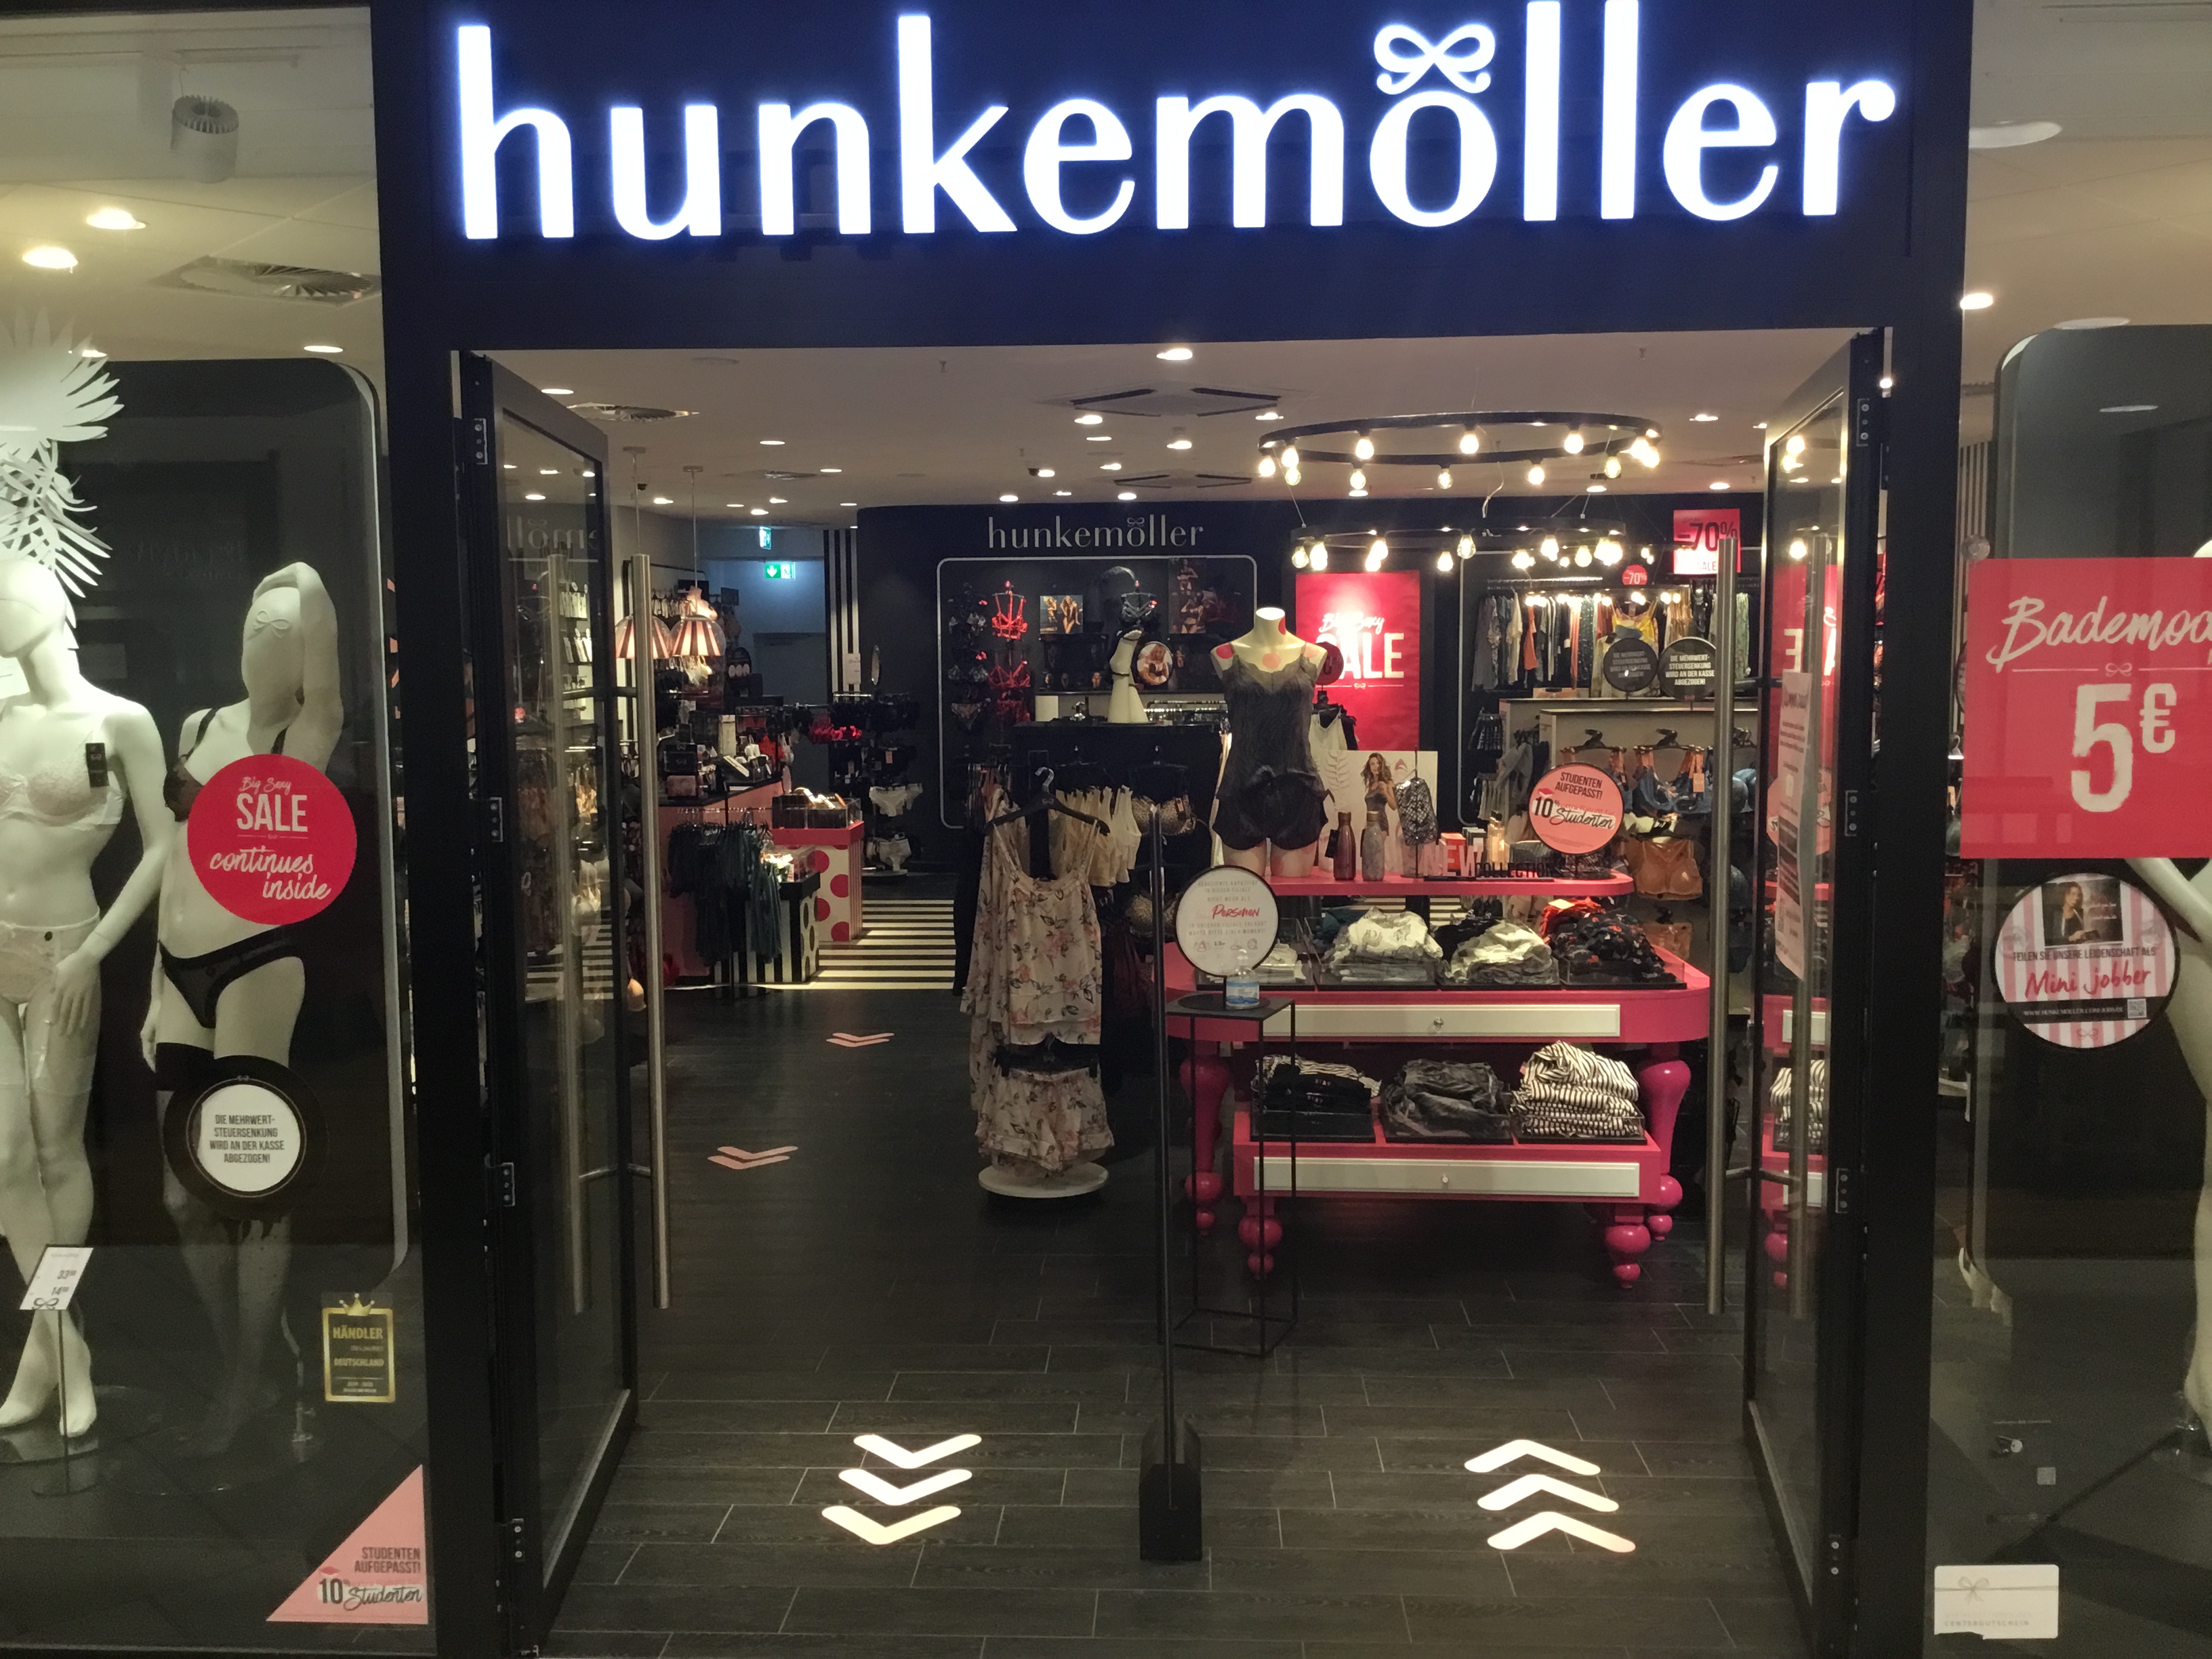 Hunkemöller, Hohenfelderstrasse 22 in Koblenz